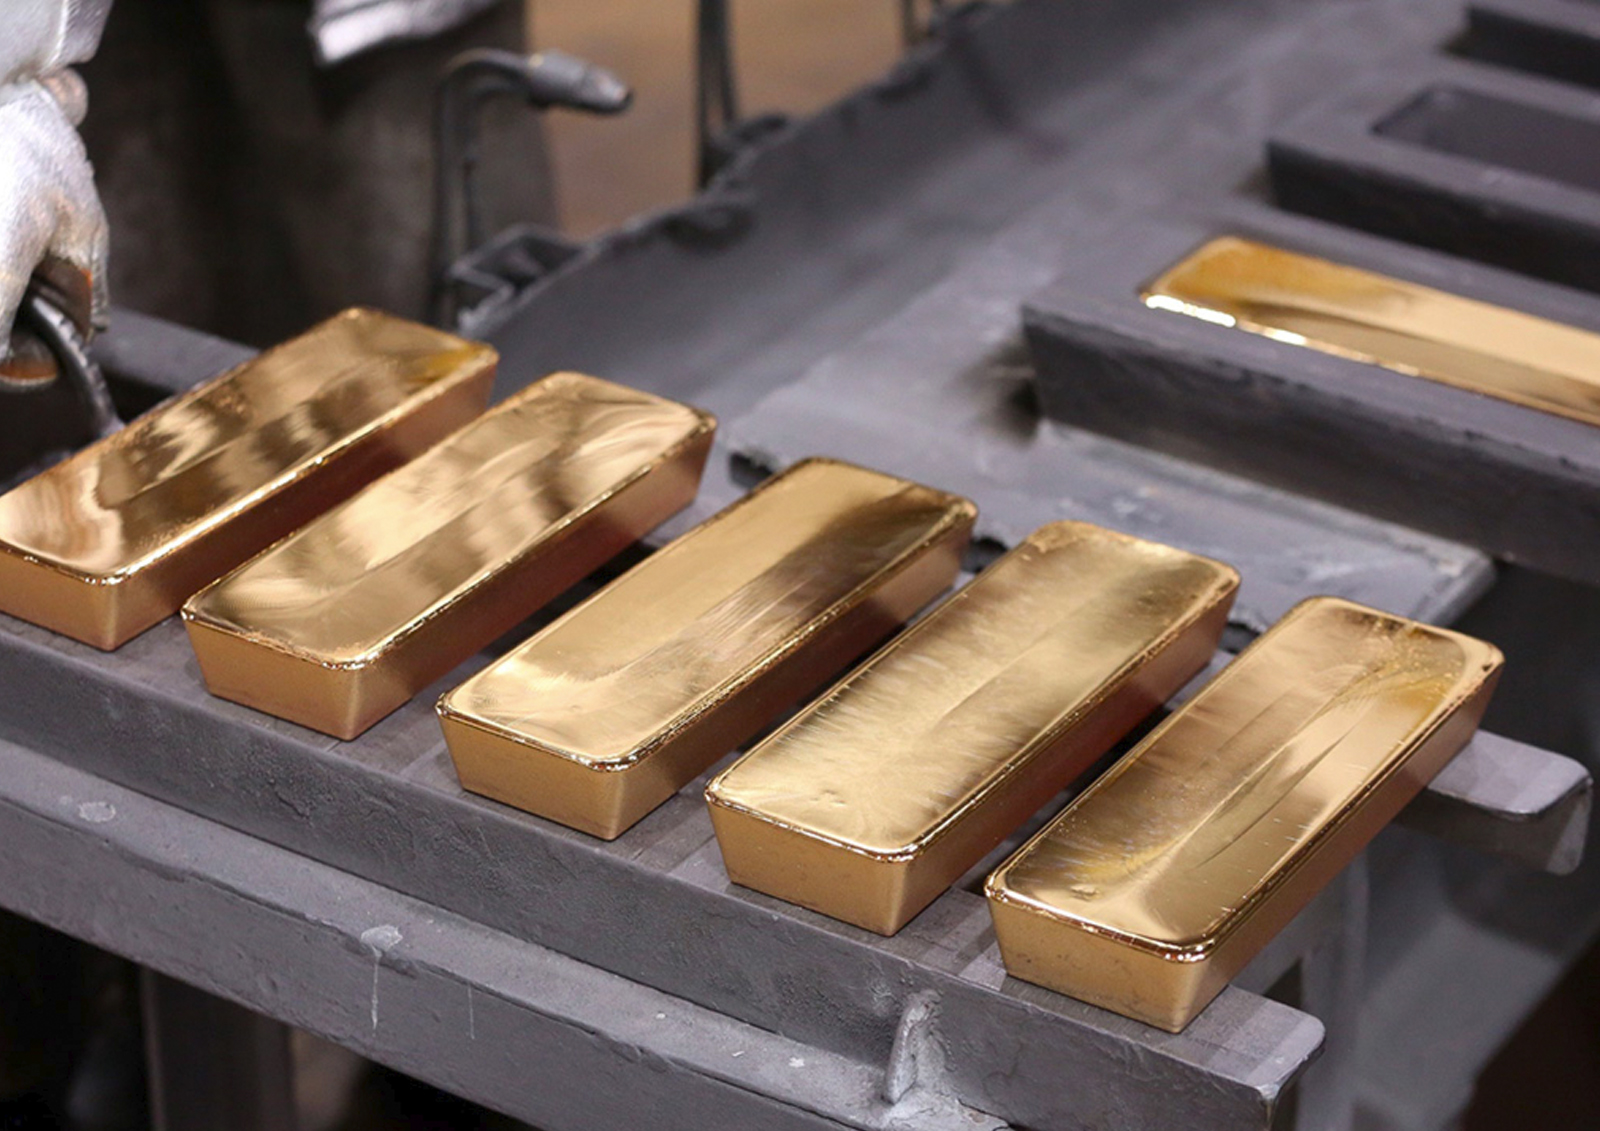 Экономист Беляев посоветовал не уповать на золото как на спасительный резерв